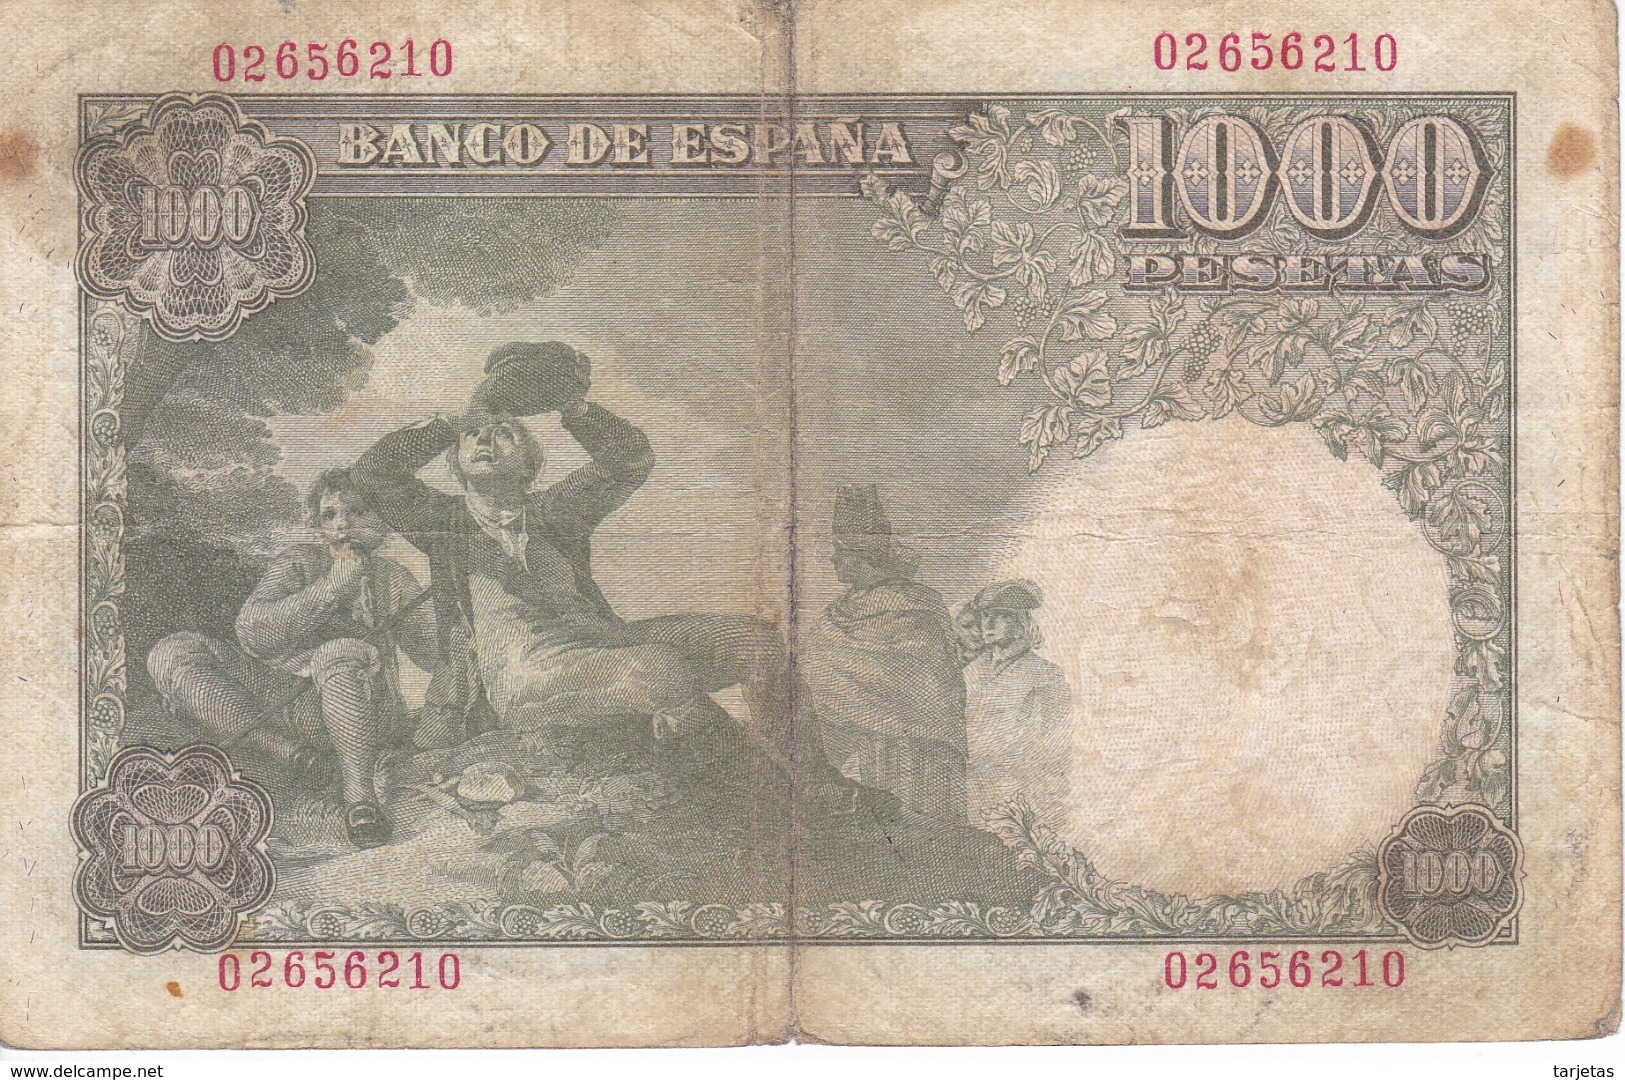 BILLETE DE 1000 PTAS DEL AÑO 1949 DE SANTILLAN (BANKNOTE) - 1000 Pesetas